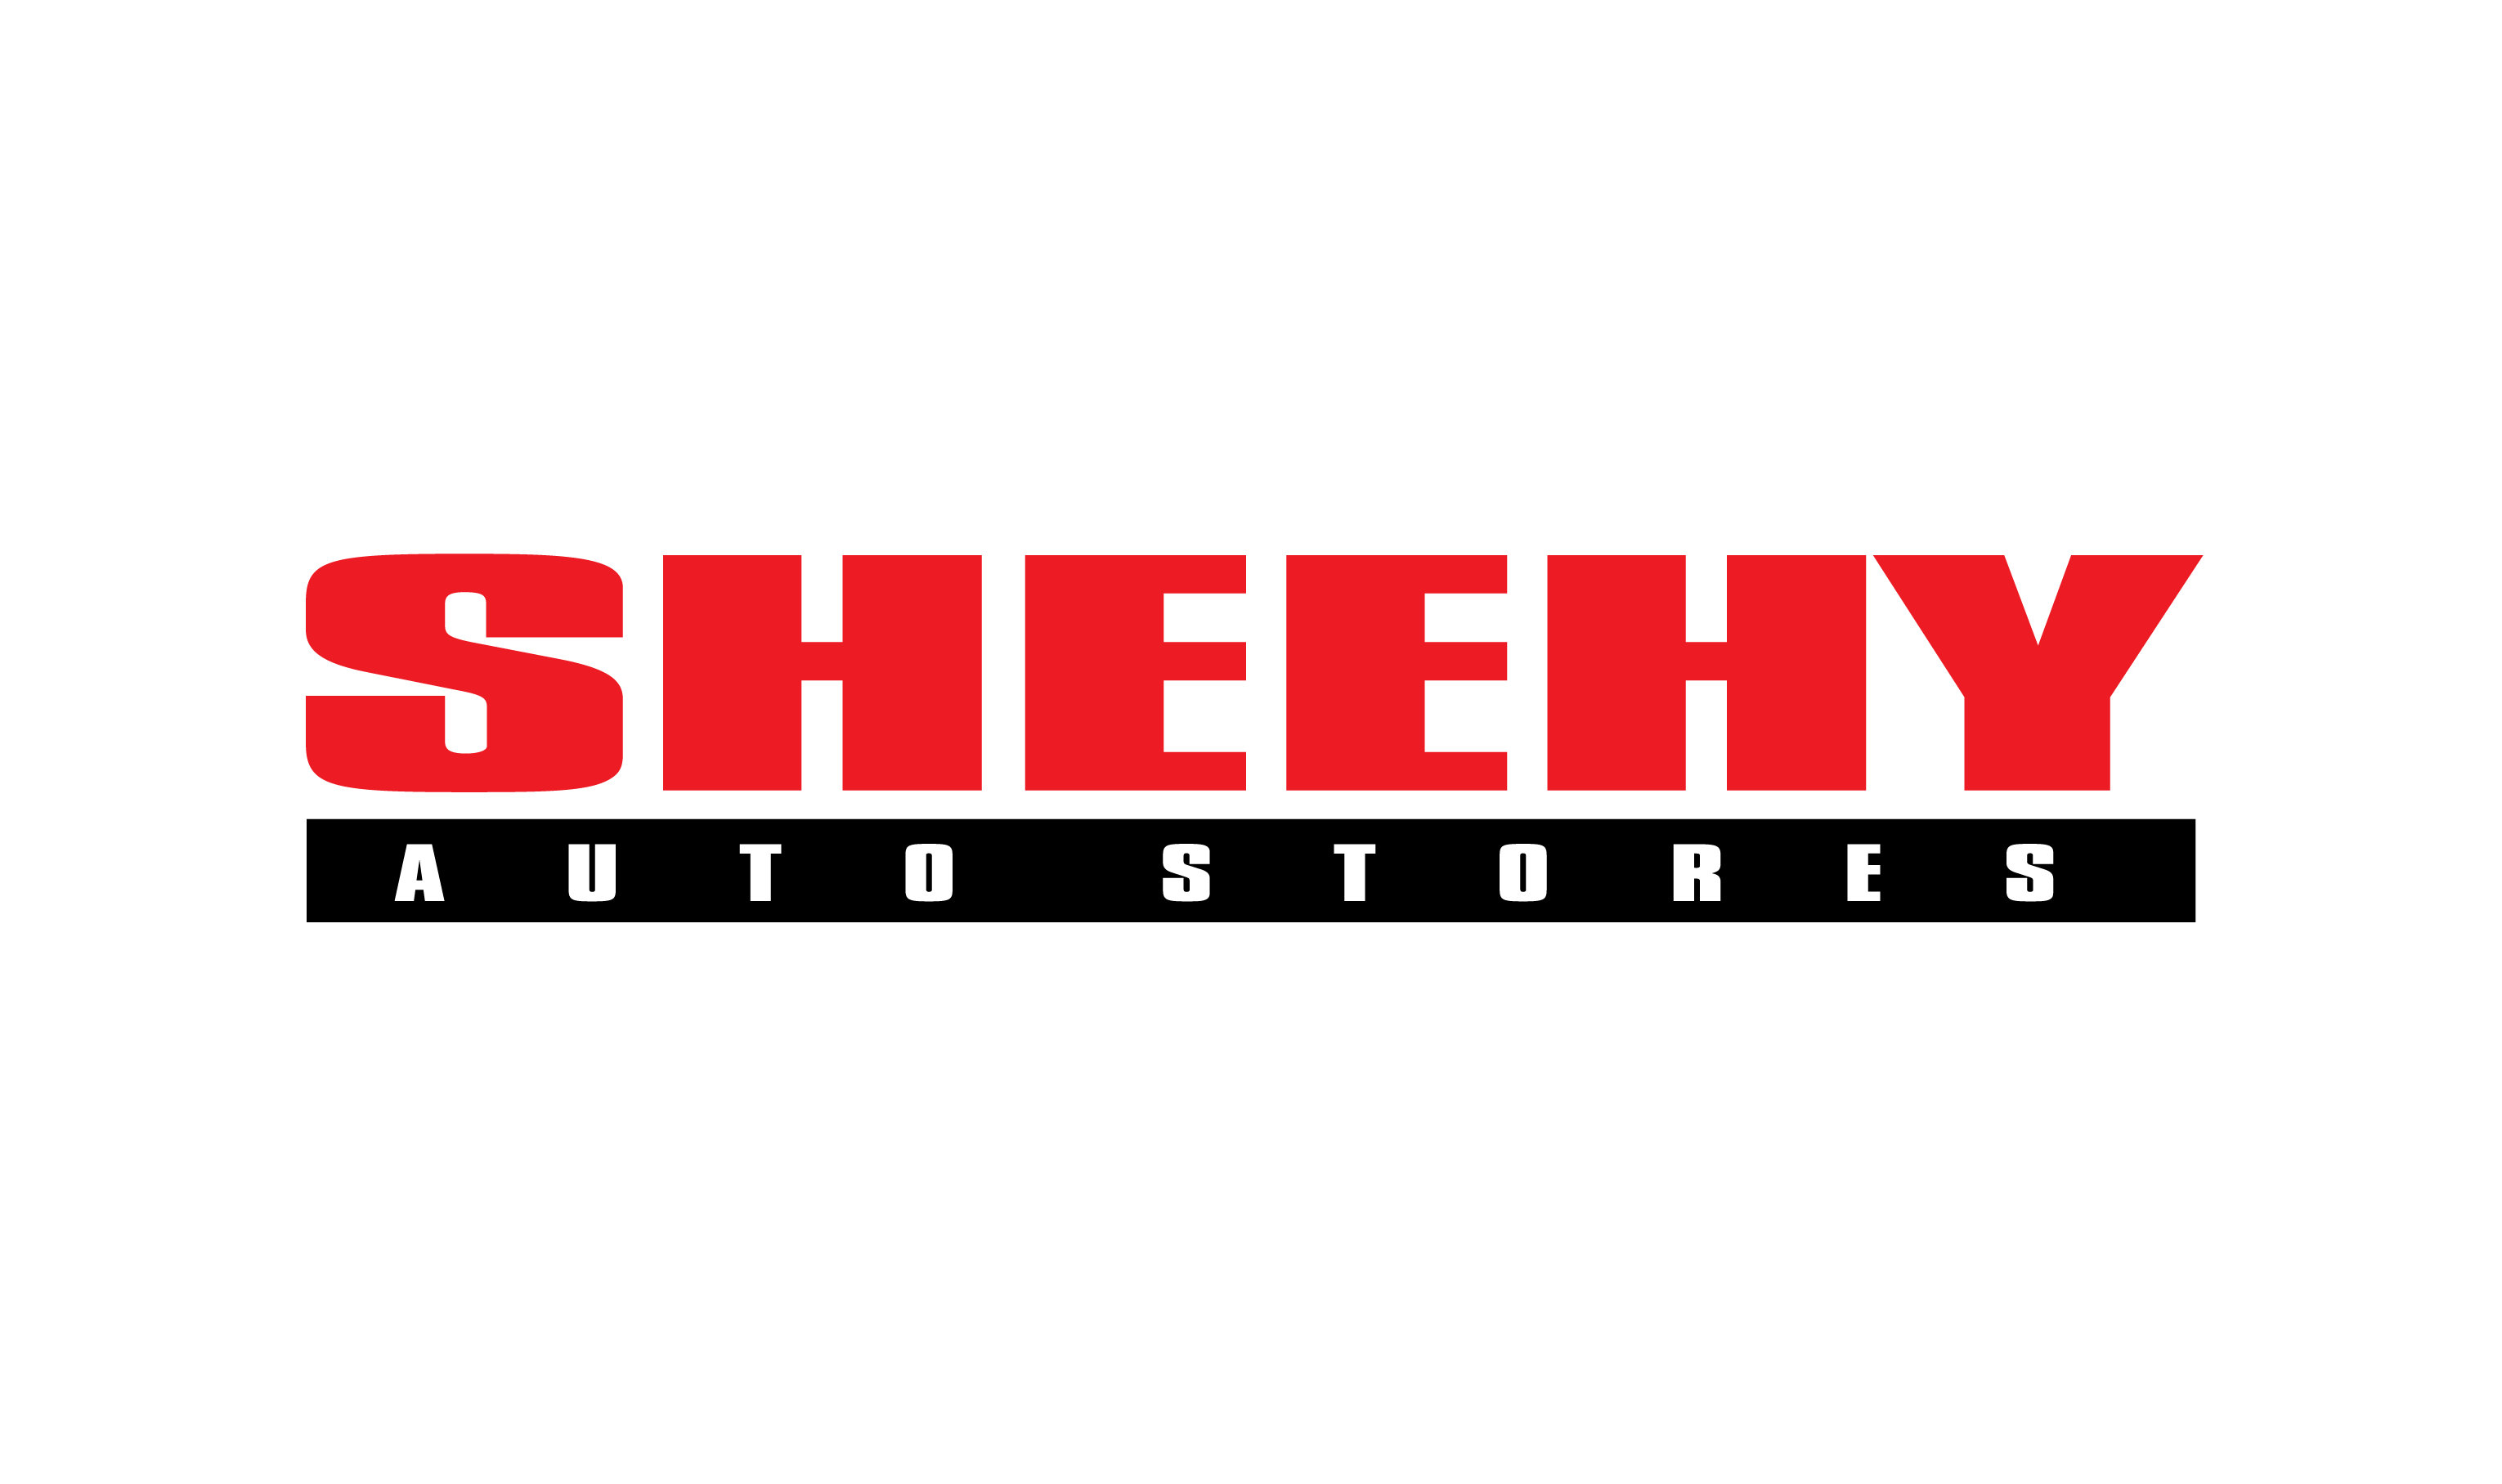 Sheehy Auto Stores Company Logo